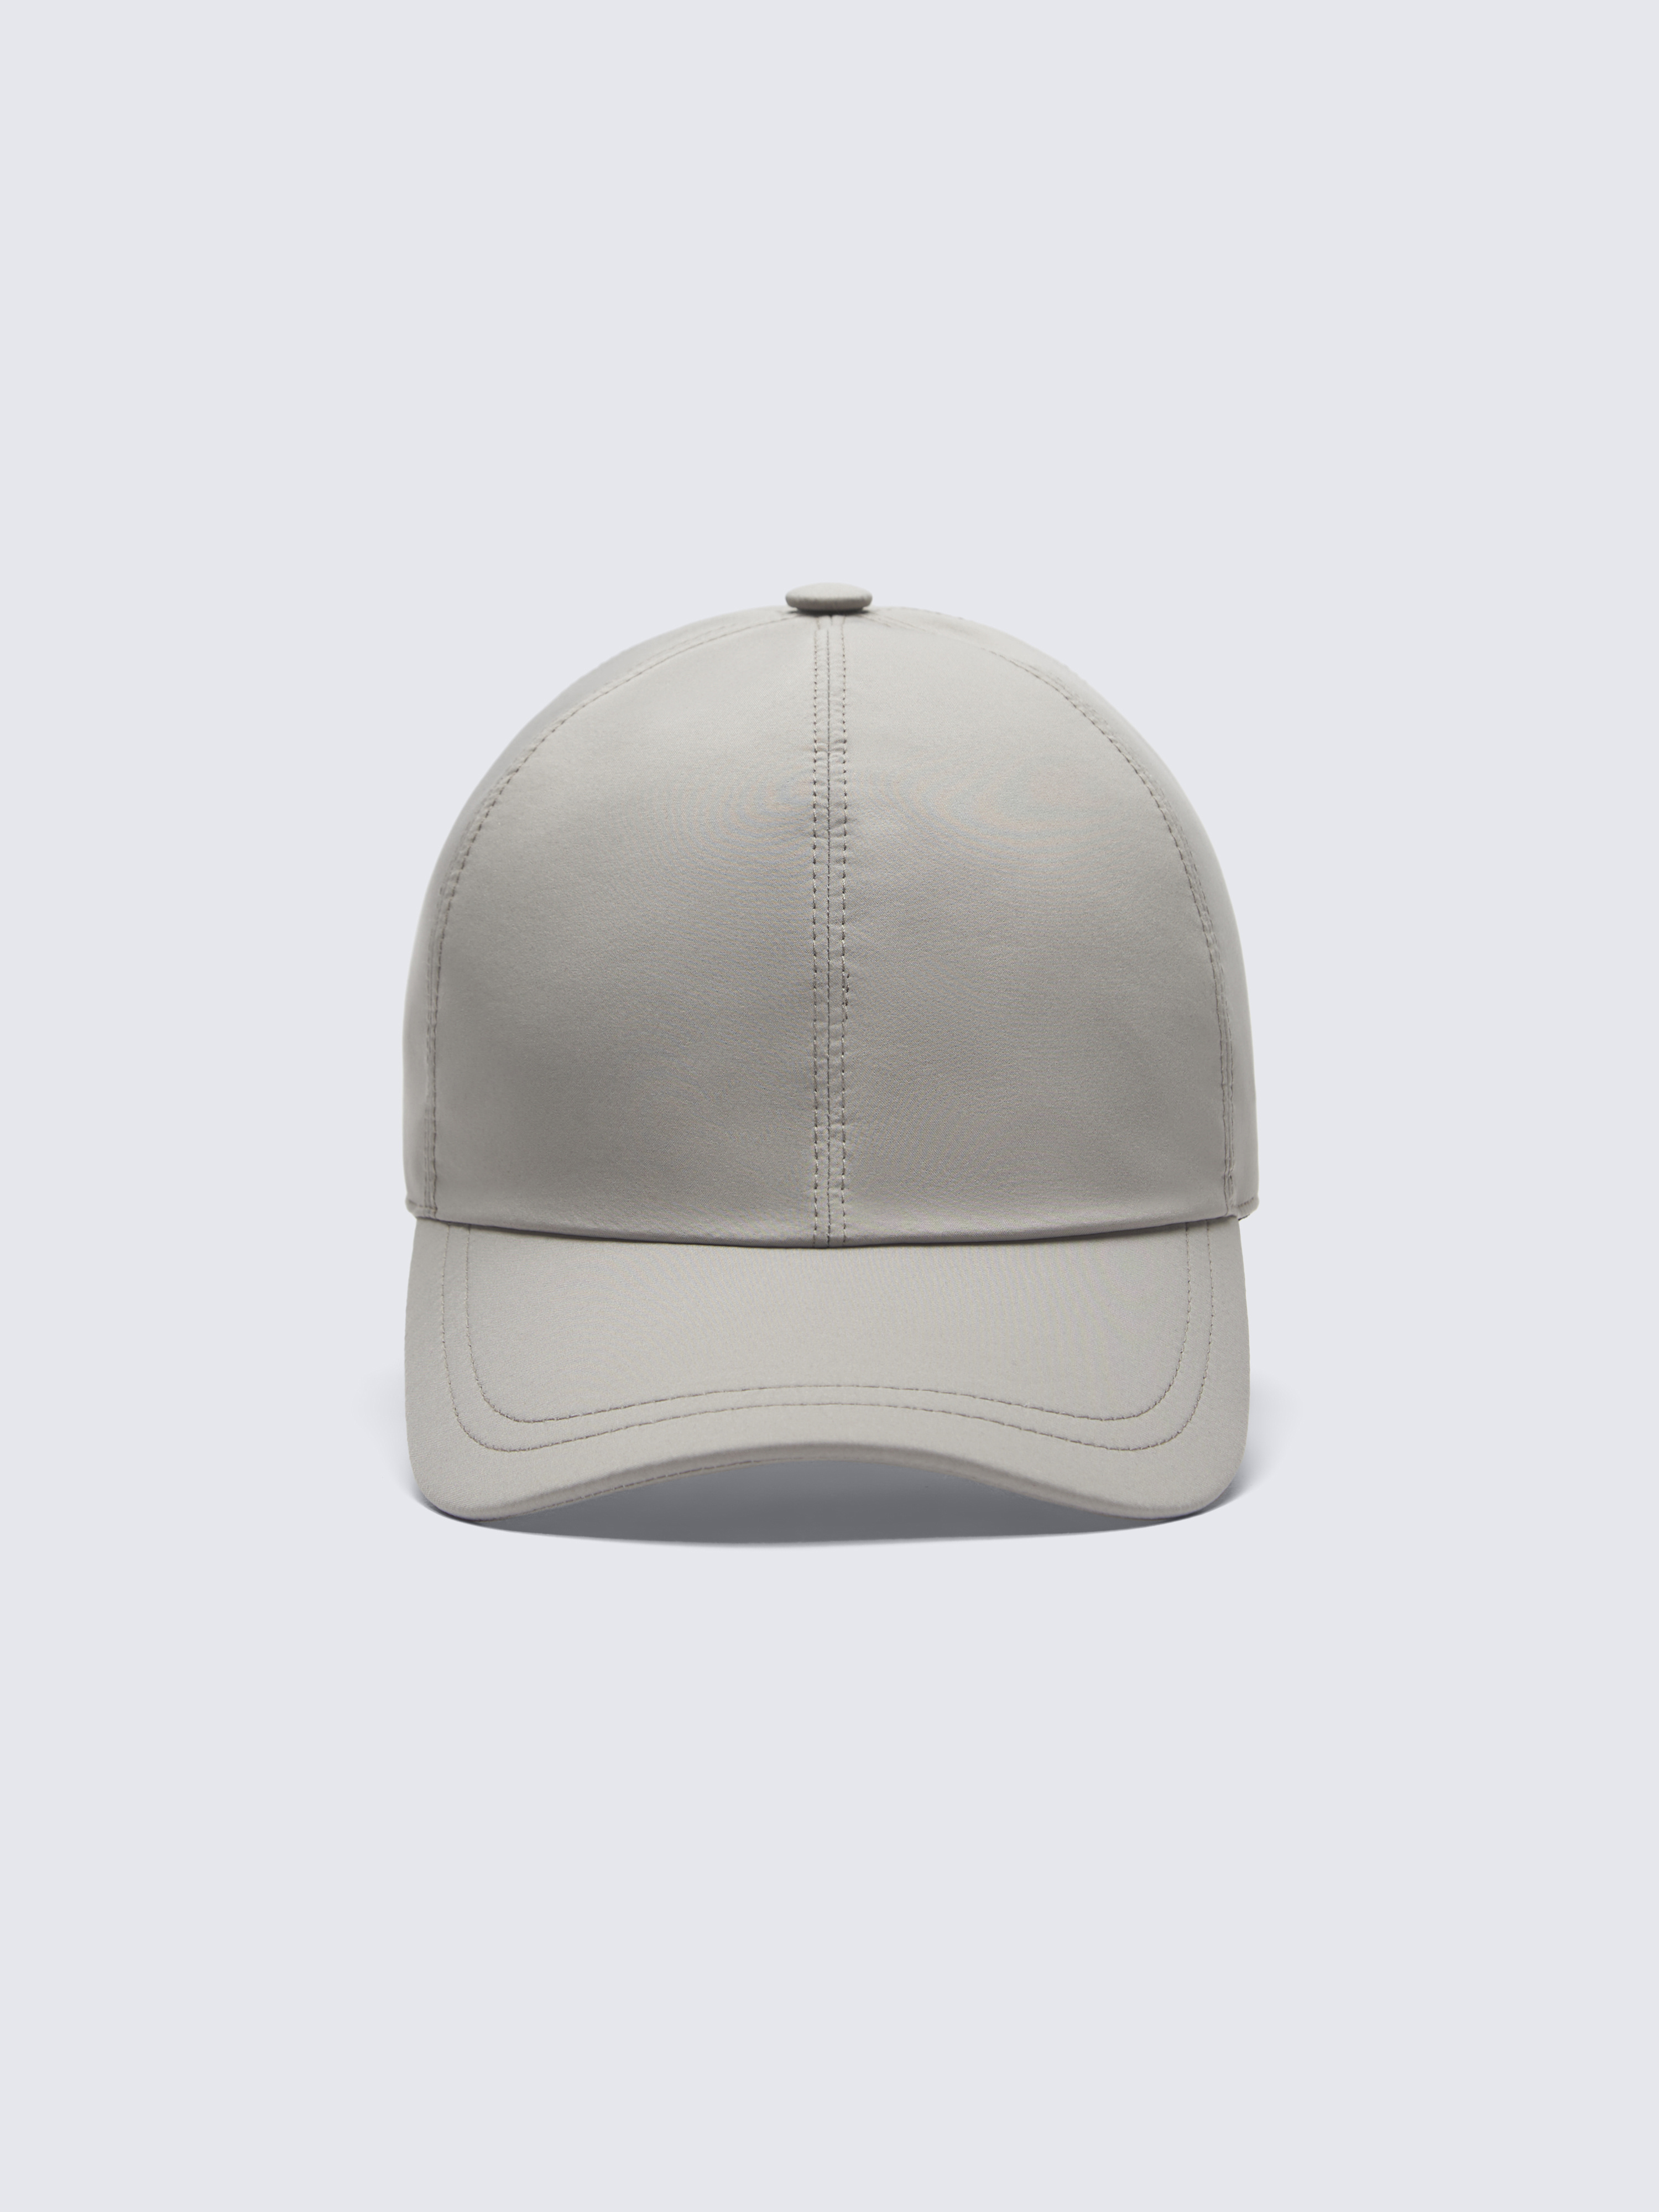 Light grey wool baseball cap